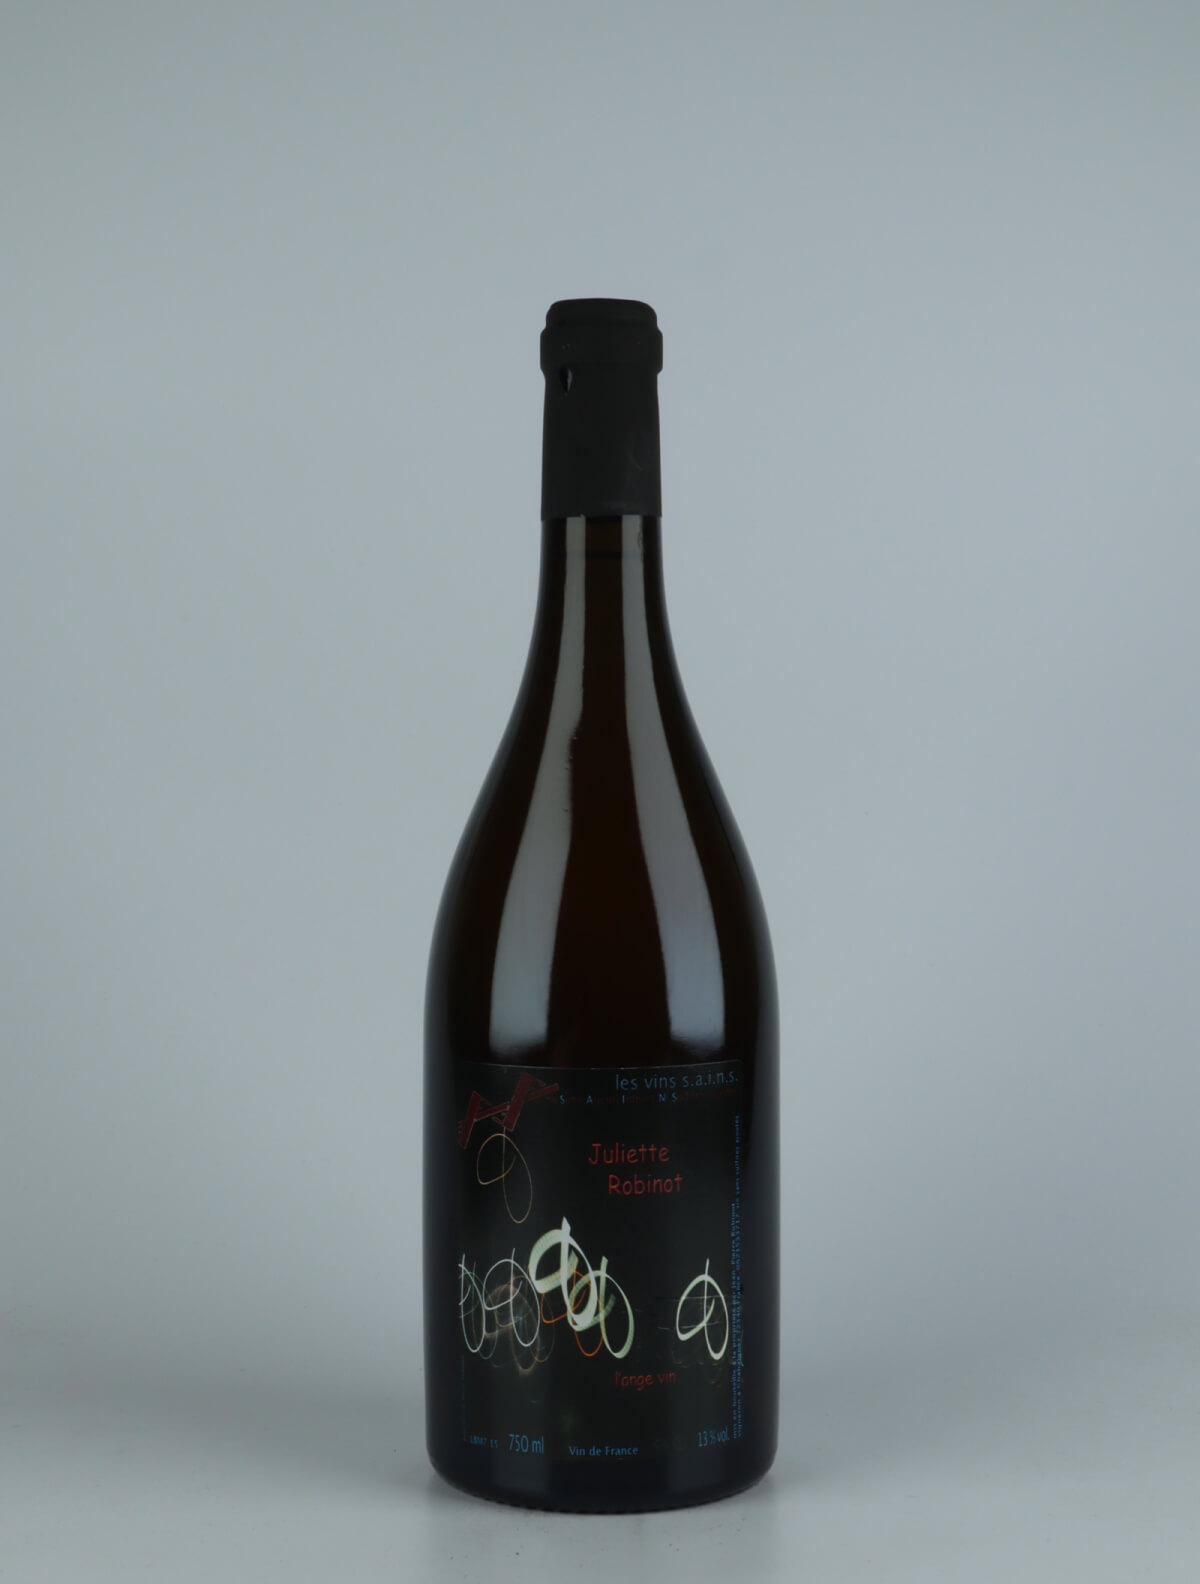 A bottle 2015 Juliette White wine from Jean-Pierre Robinot, Loire in France